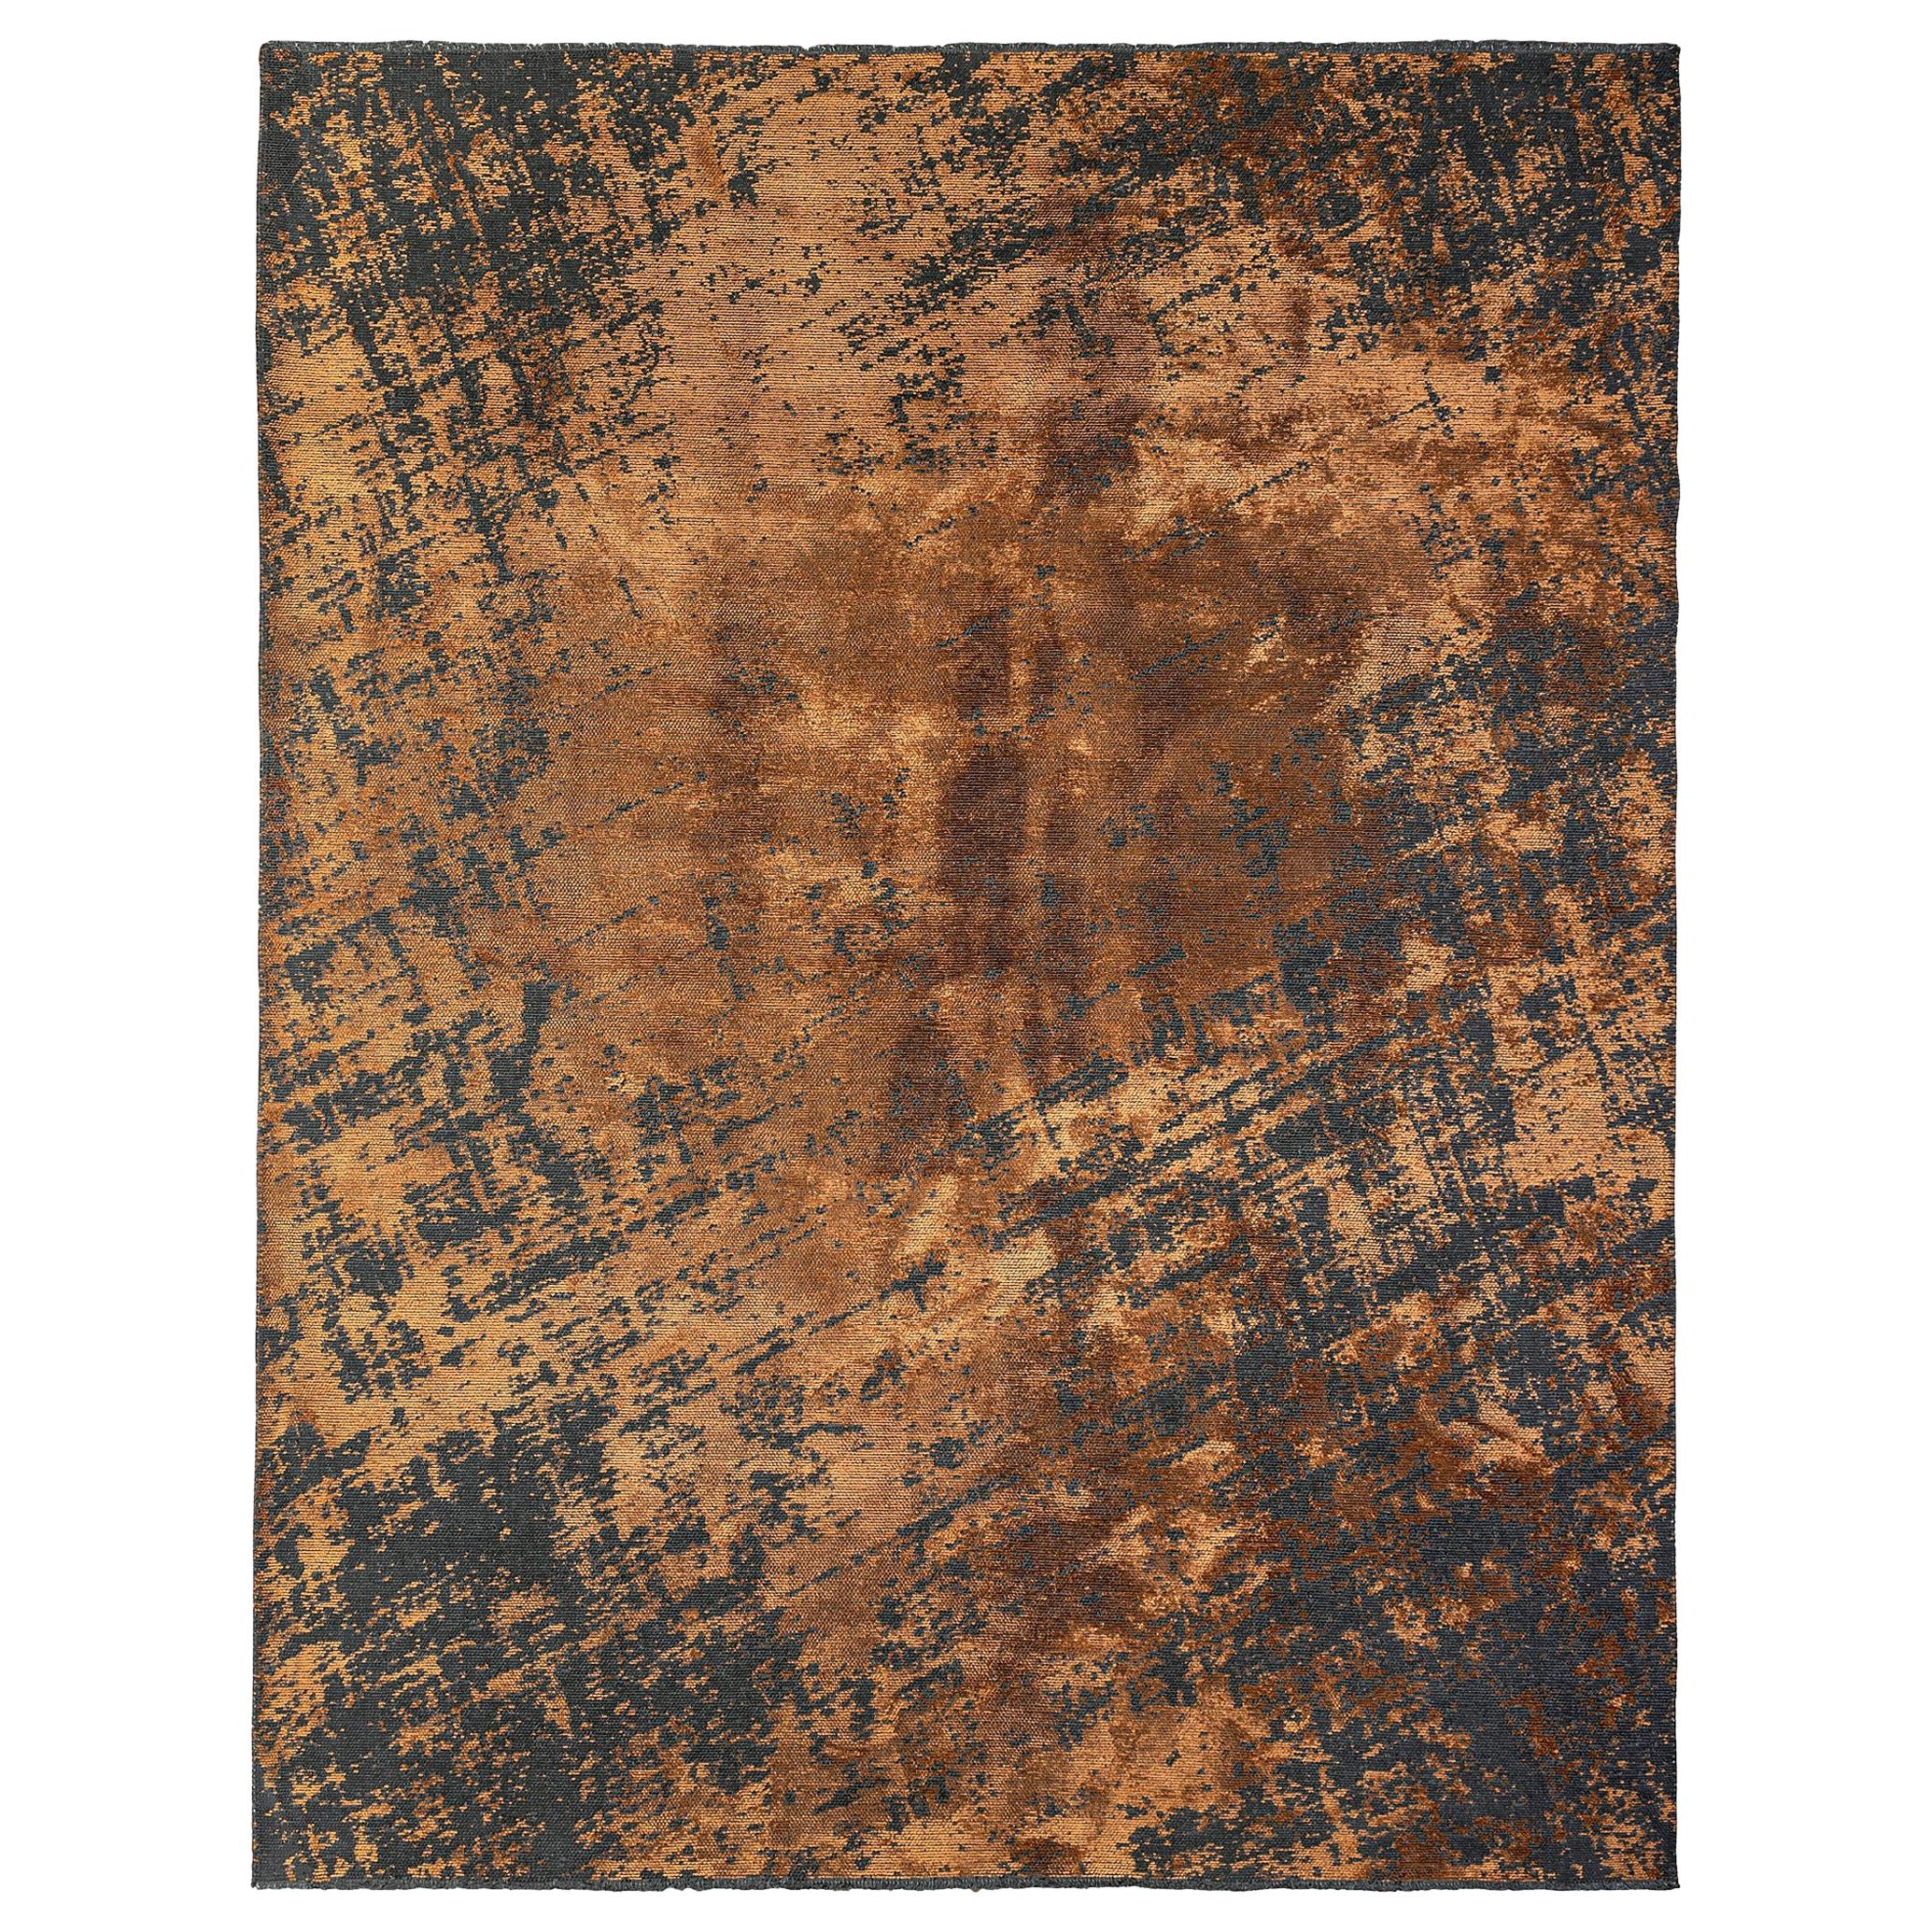 Weicher Semi-Plüsch-Teppich in Rostorange und Anthrazit mit modernem abstraktem Muster 